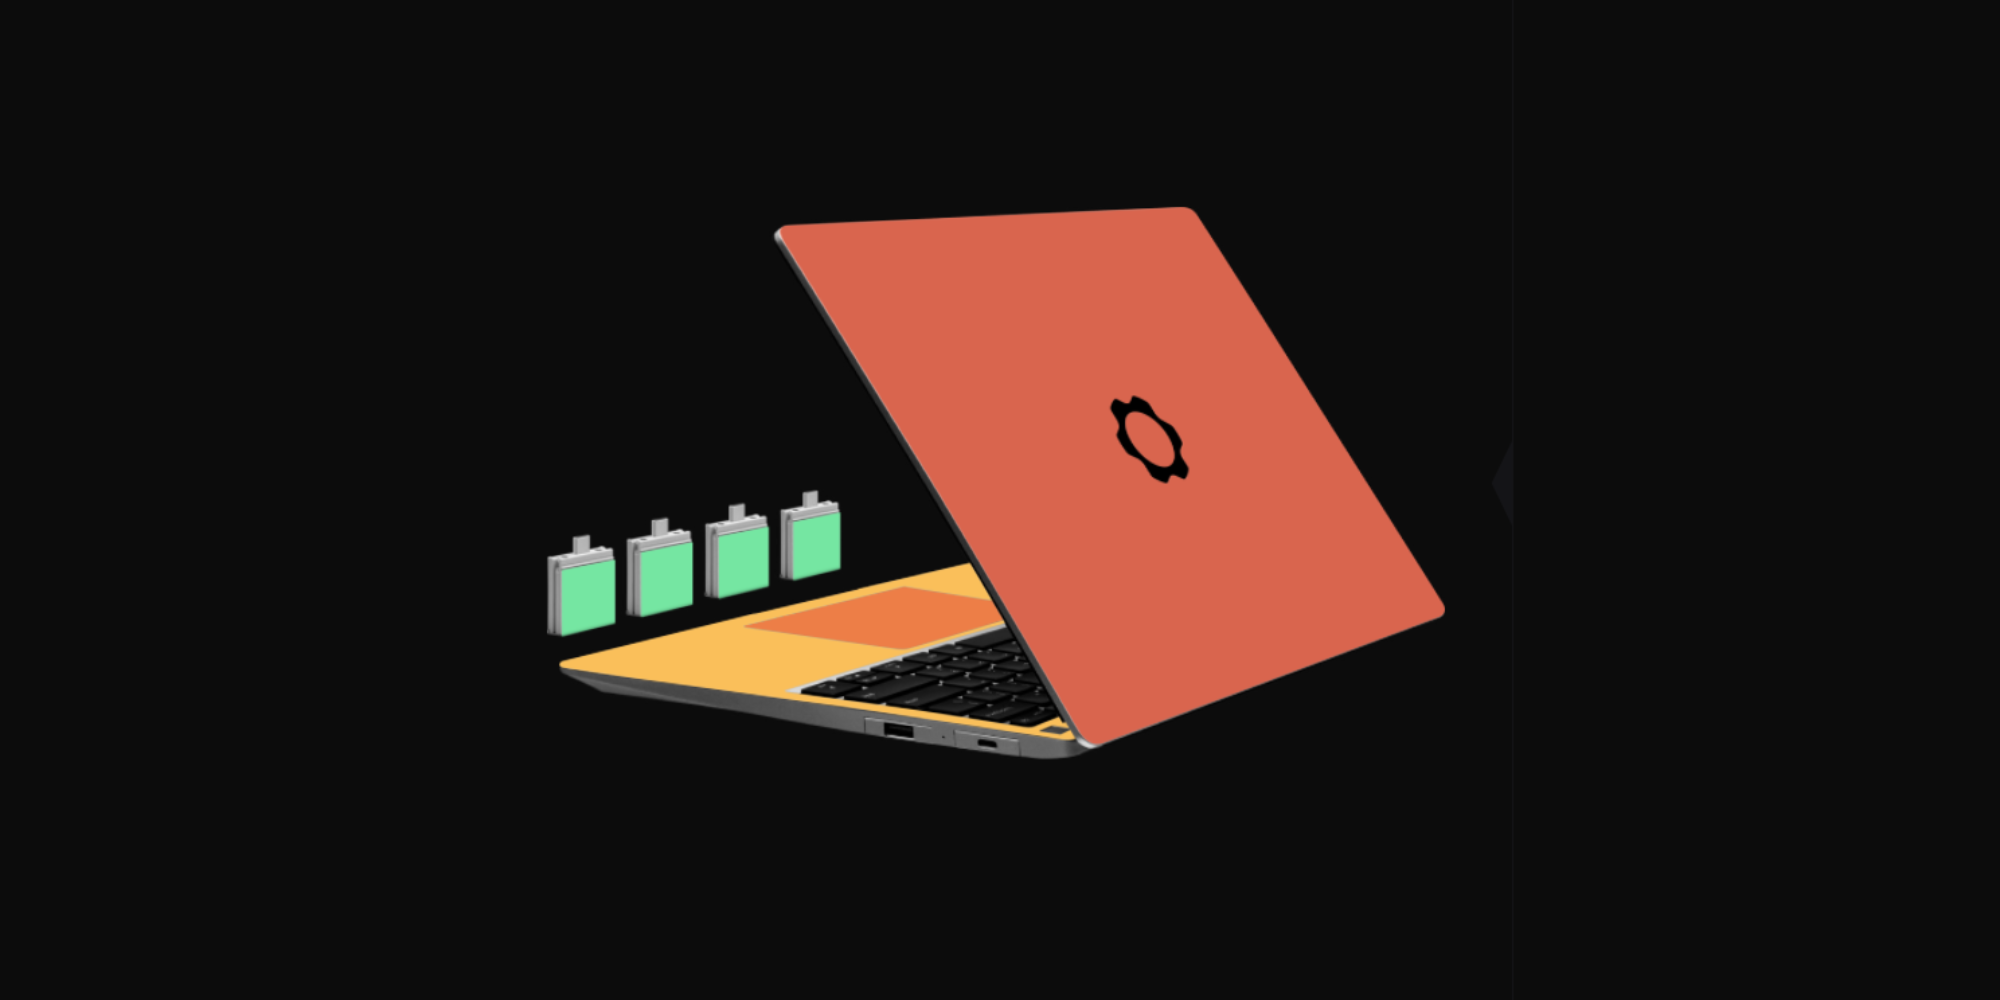 dbrand now sells Framework Laptop skins, including expansion cards